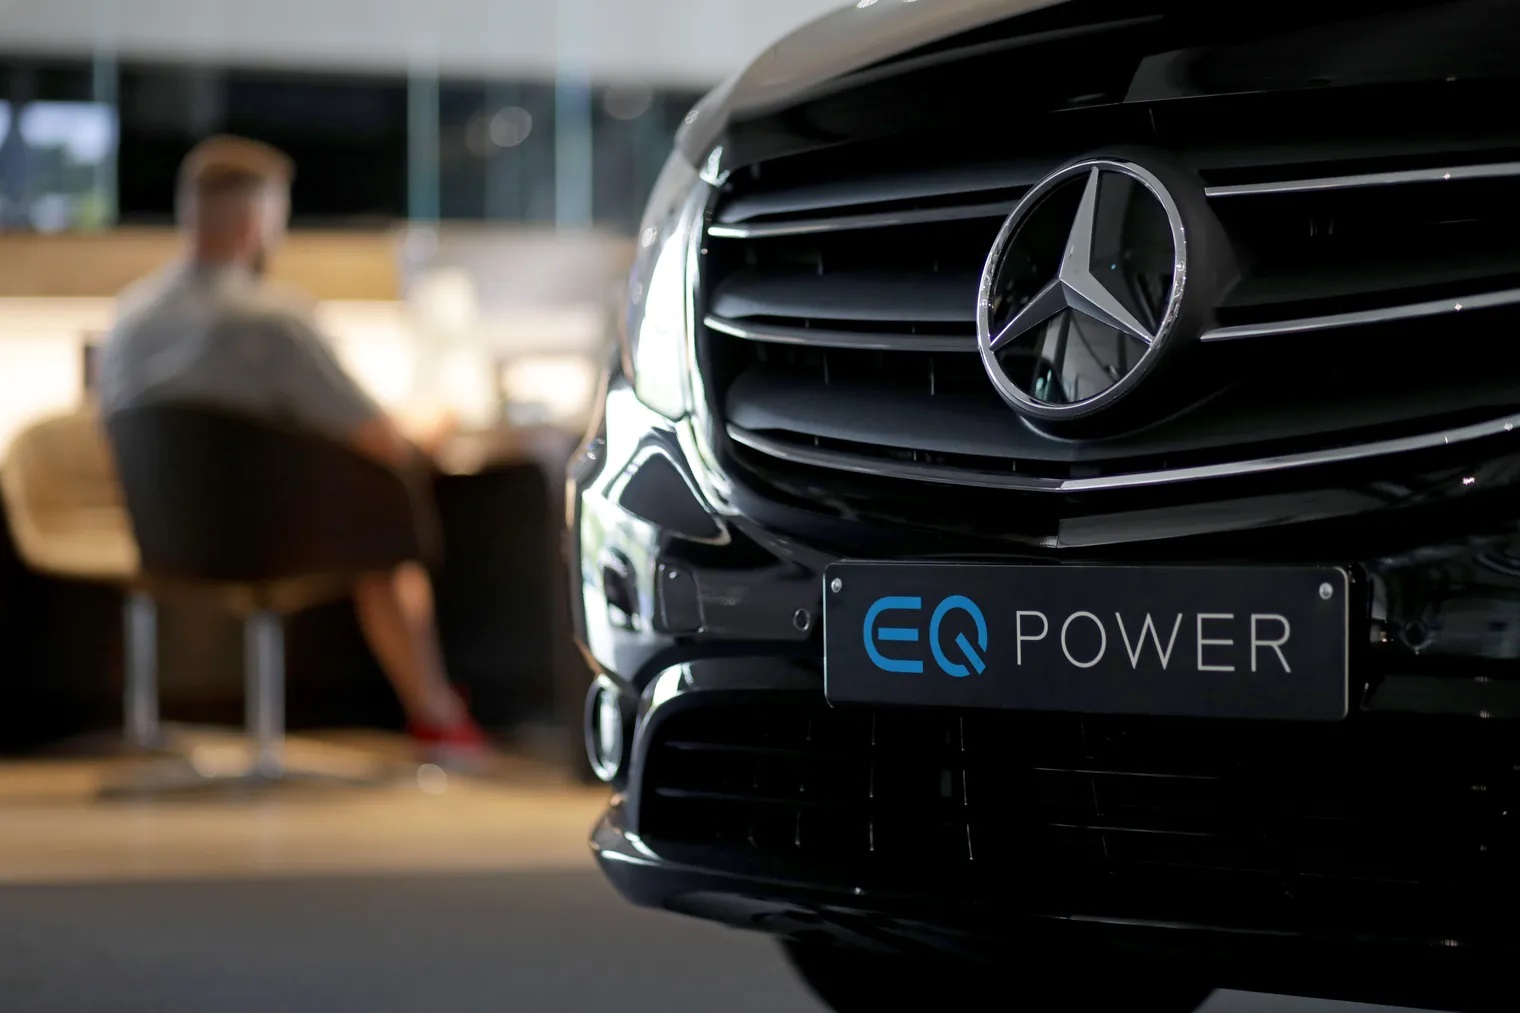 Σχεδόν όλα τα οχήματα της Mercedes-Benz από το 2030 θα είναι ηλεκτρικά